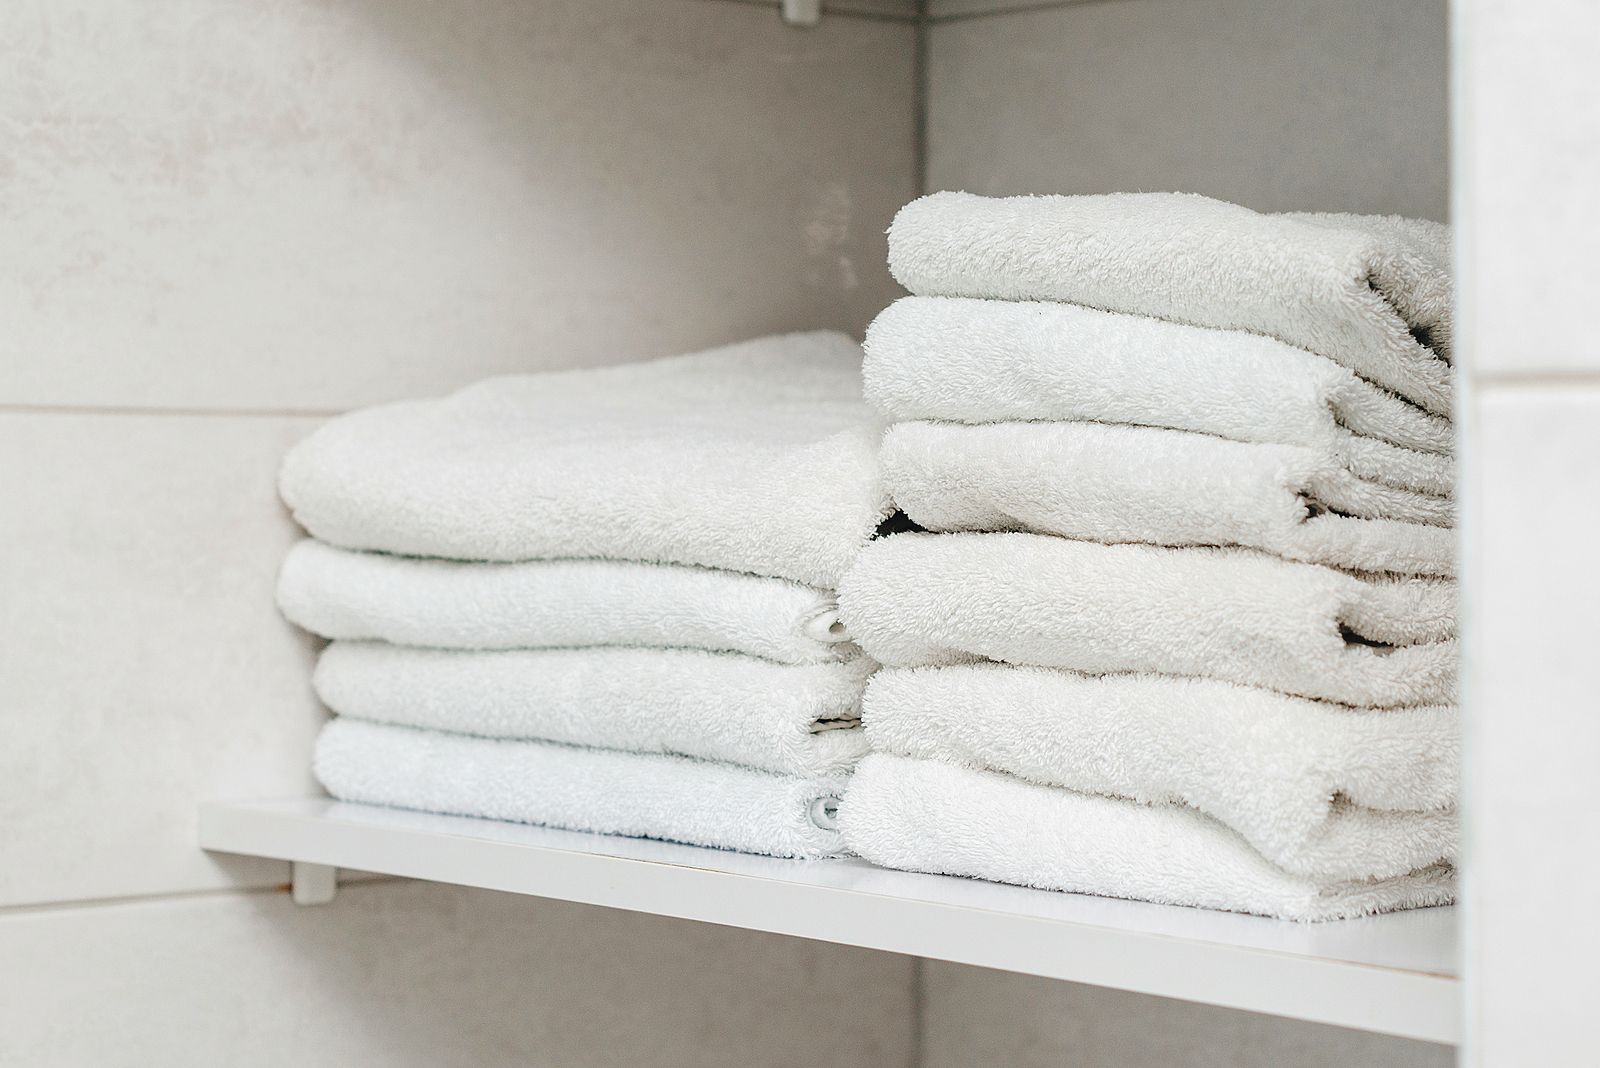 ¿Por qué las toallas blancas pierden su color? Esta es la solución Foto: bigstock